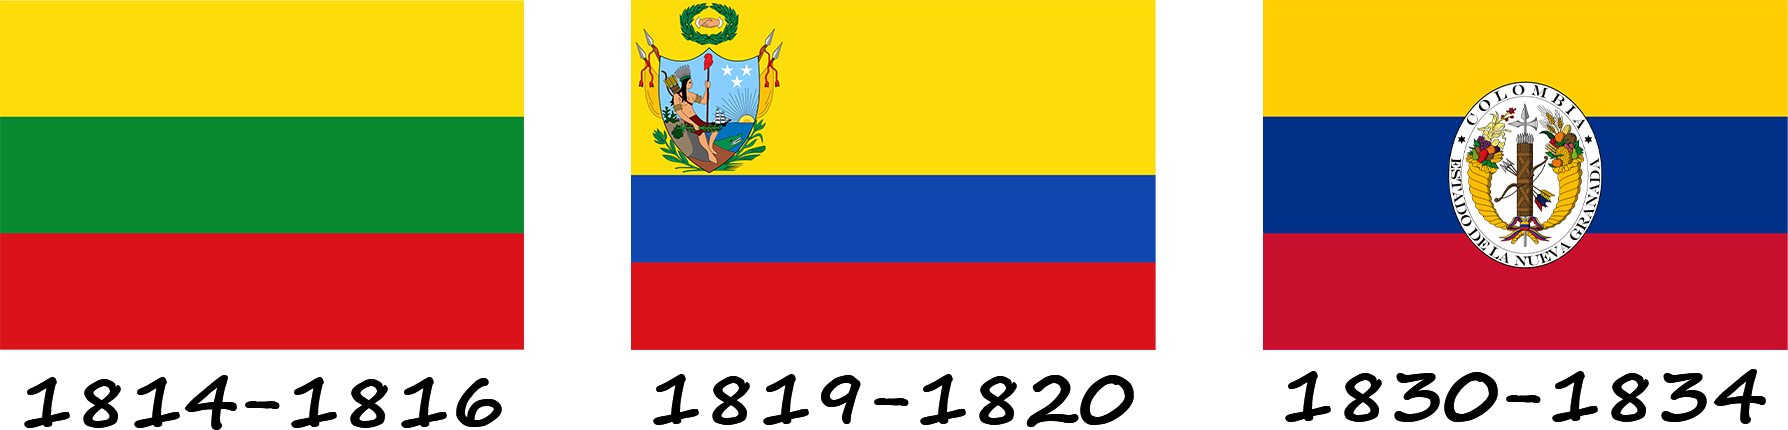 Historia de la bandera de Colombia